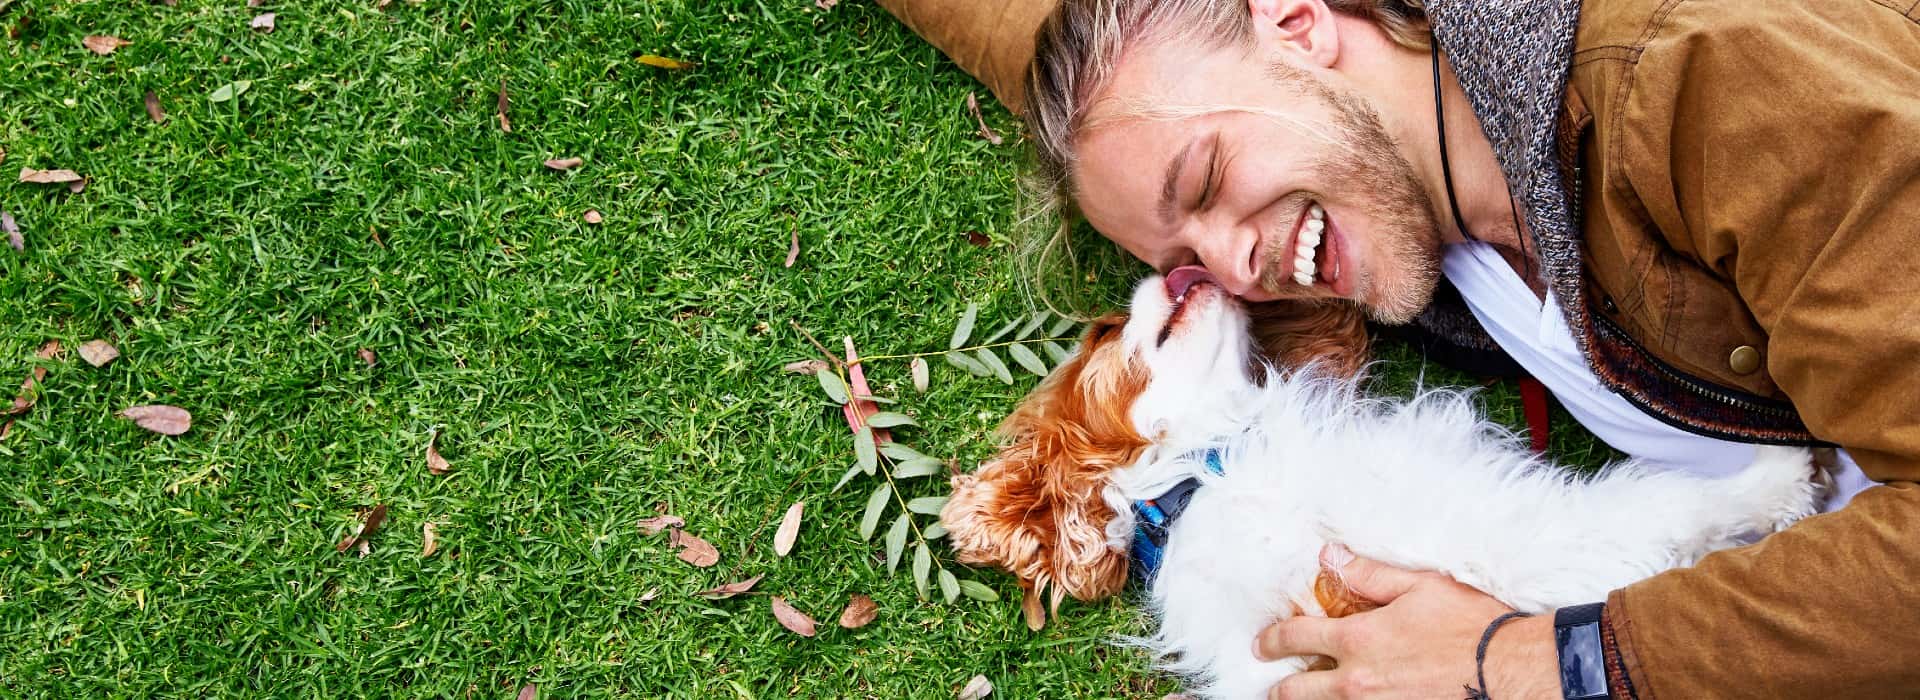 一个男人躺在草地上，带着一只棕白色的小狗. 狗舔着男人的脸，男人在笑.